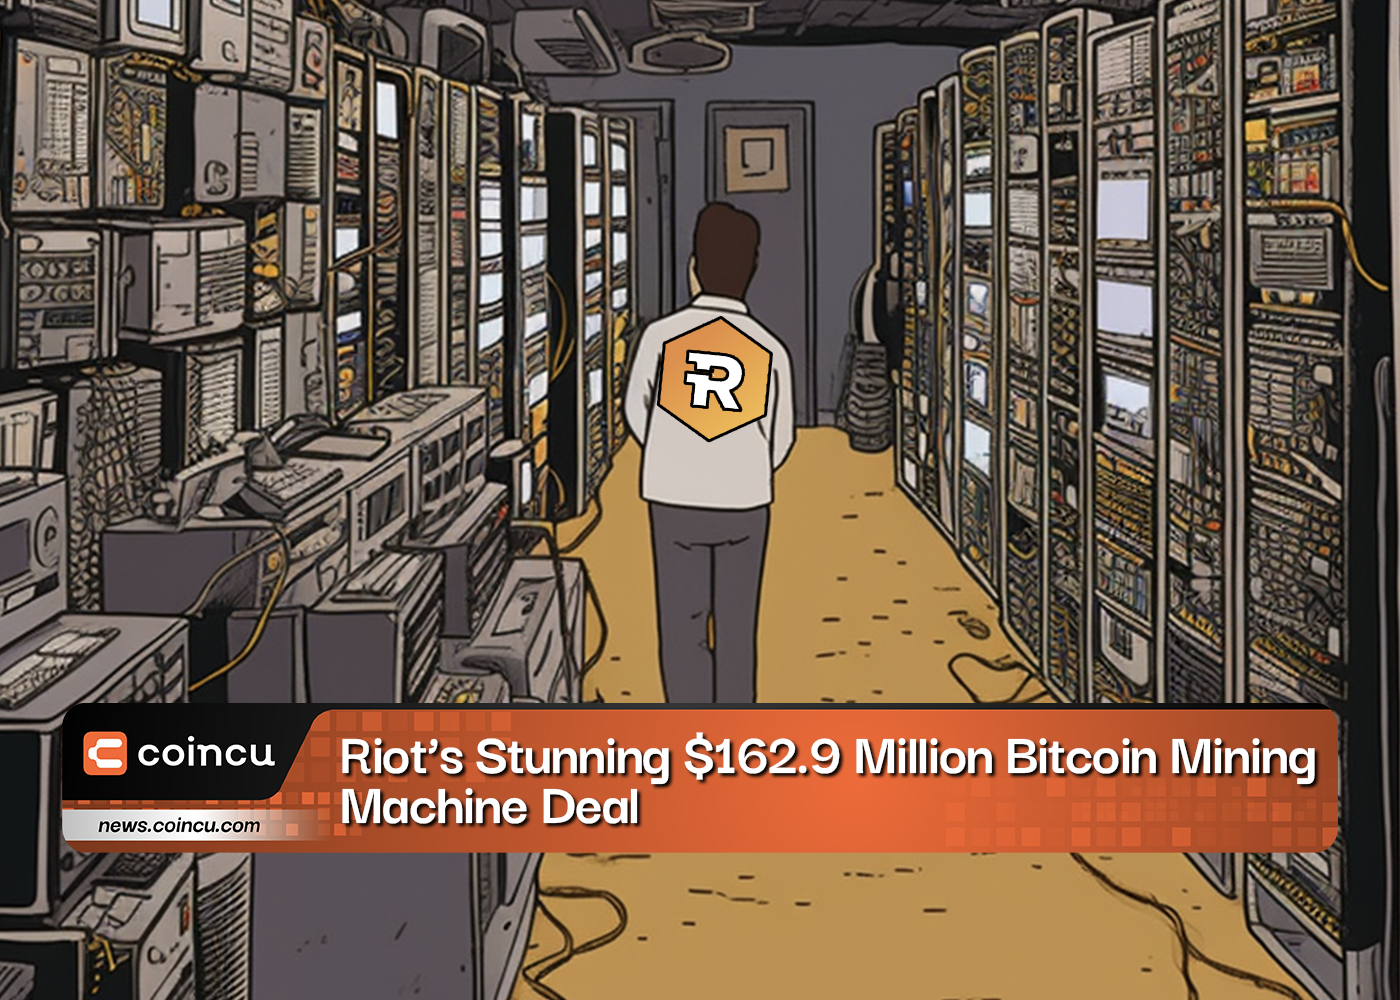 Riots Stunning 162.9 Million Bitcoin Mining Machine Deal